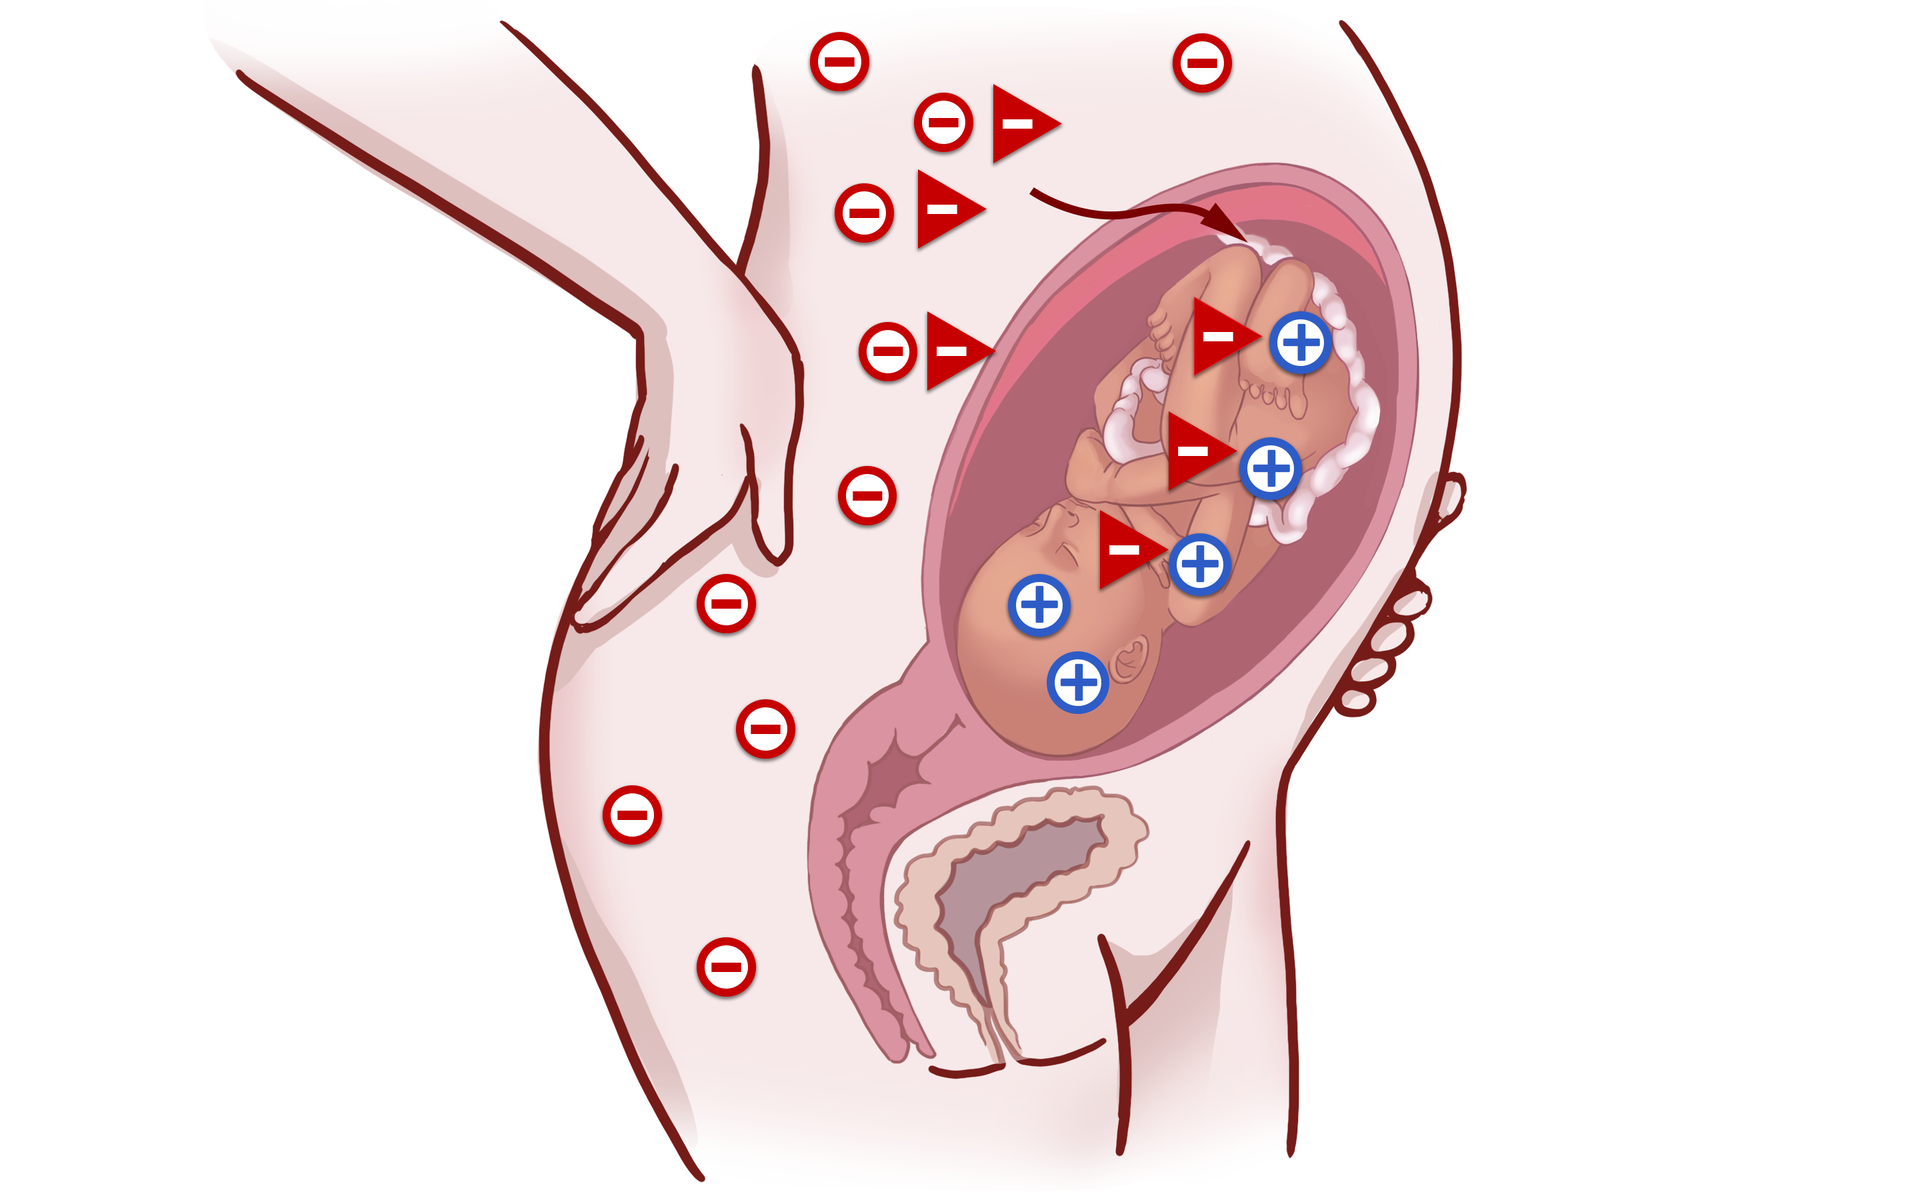 Grafika przedstawia przekrój ciała kobietę w ciąży. Na jej ciele widoczne są minusy, sygnalizujące grupę krwi Rh-. Natomiast płód posiada grupę krwi Rh+, sygnalizowaną przez plusy na jego ciele. Dochodzi do kontaktu krwi matki z krwią płodu, co powoduje wytworzenie we krwi matki przeciwciał anty‑D. Przeciwciała te łączą się z erytocytami płodu, przez co dochodzi do aglutynacji krwi.